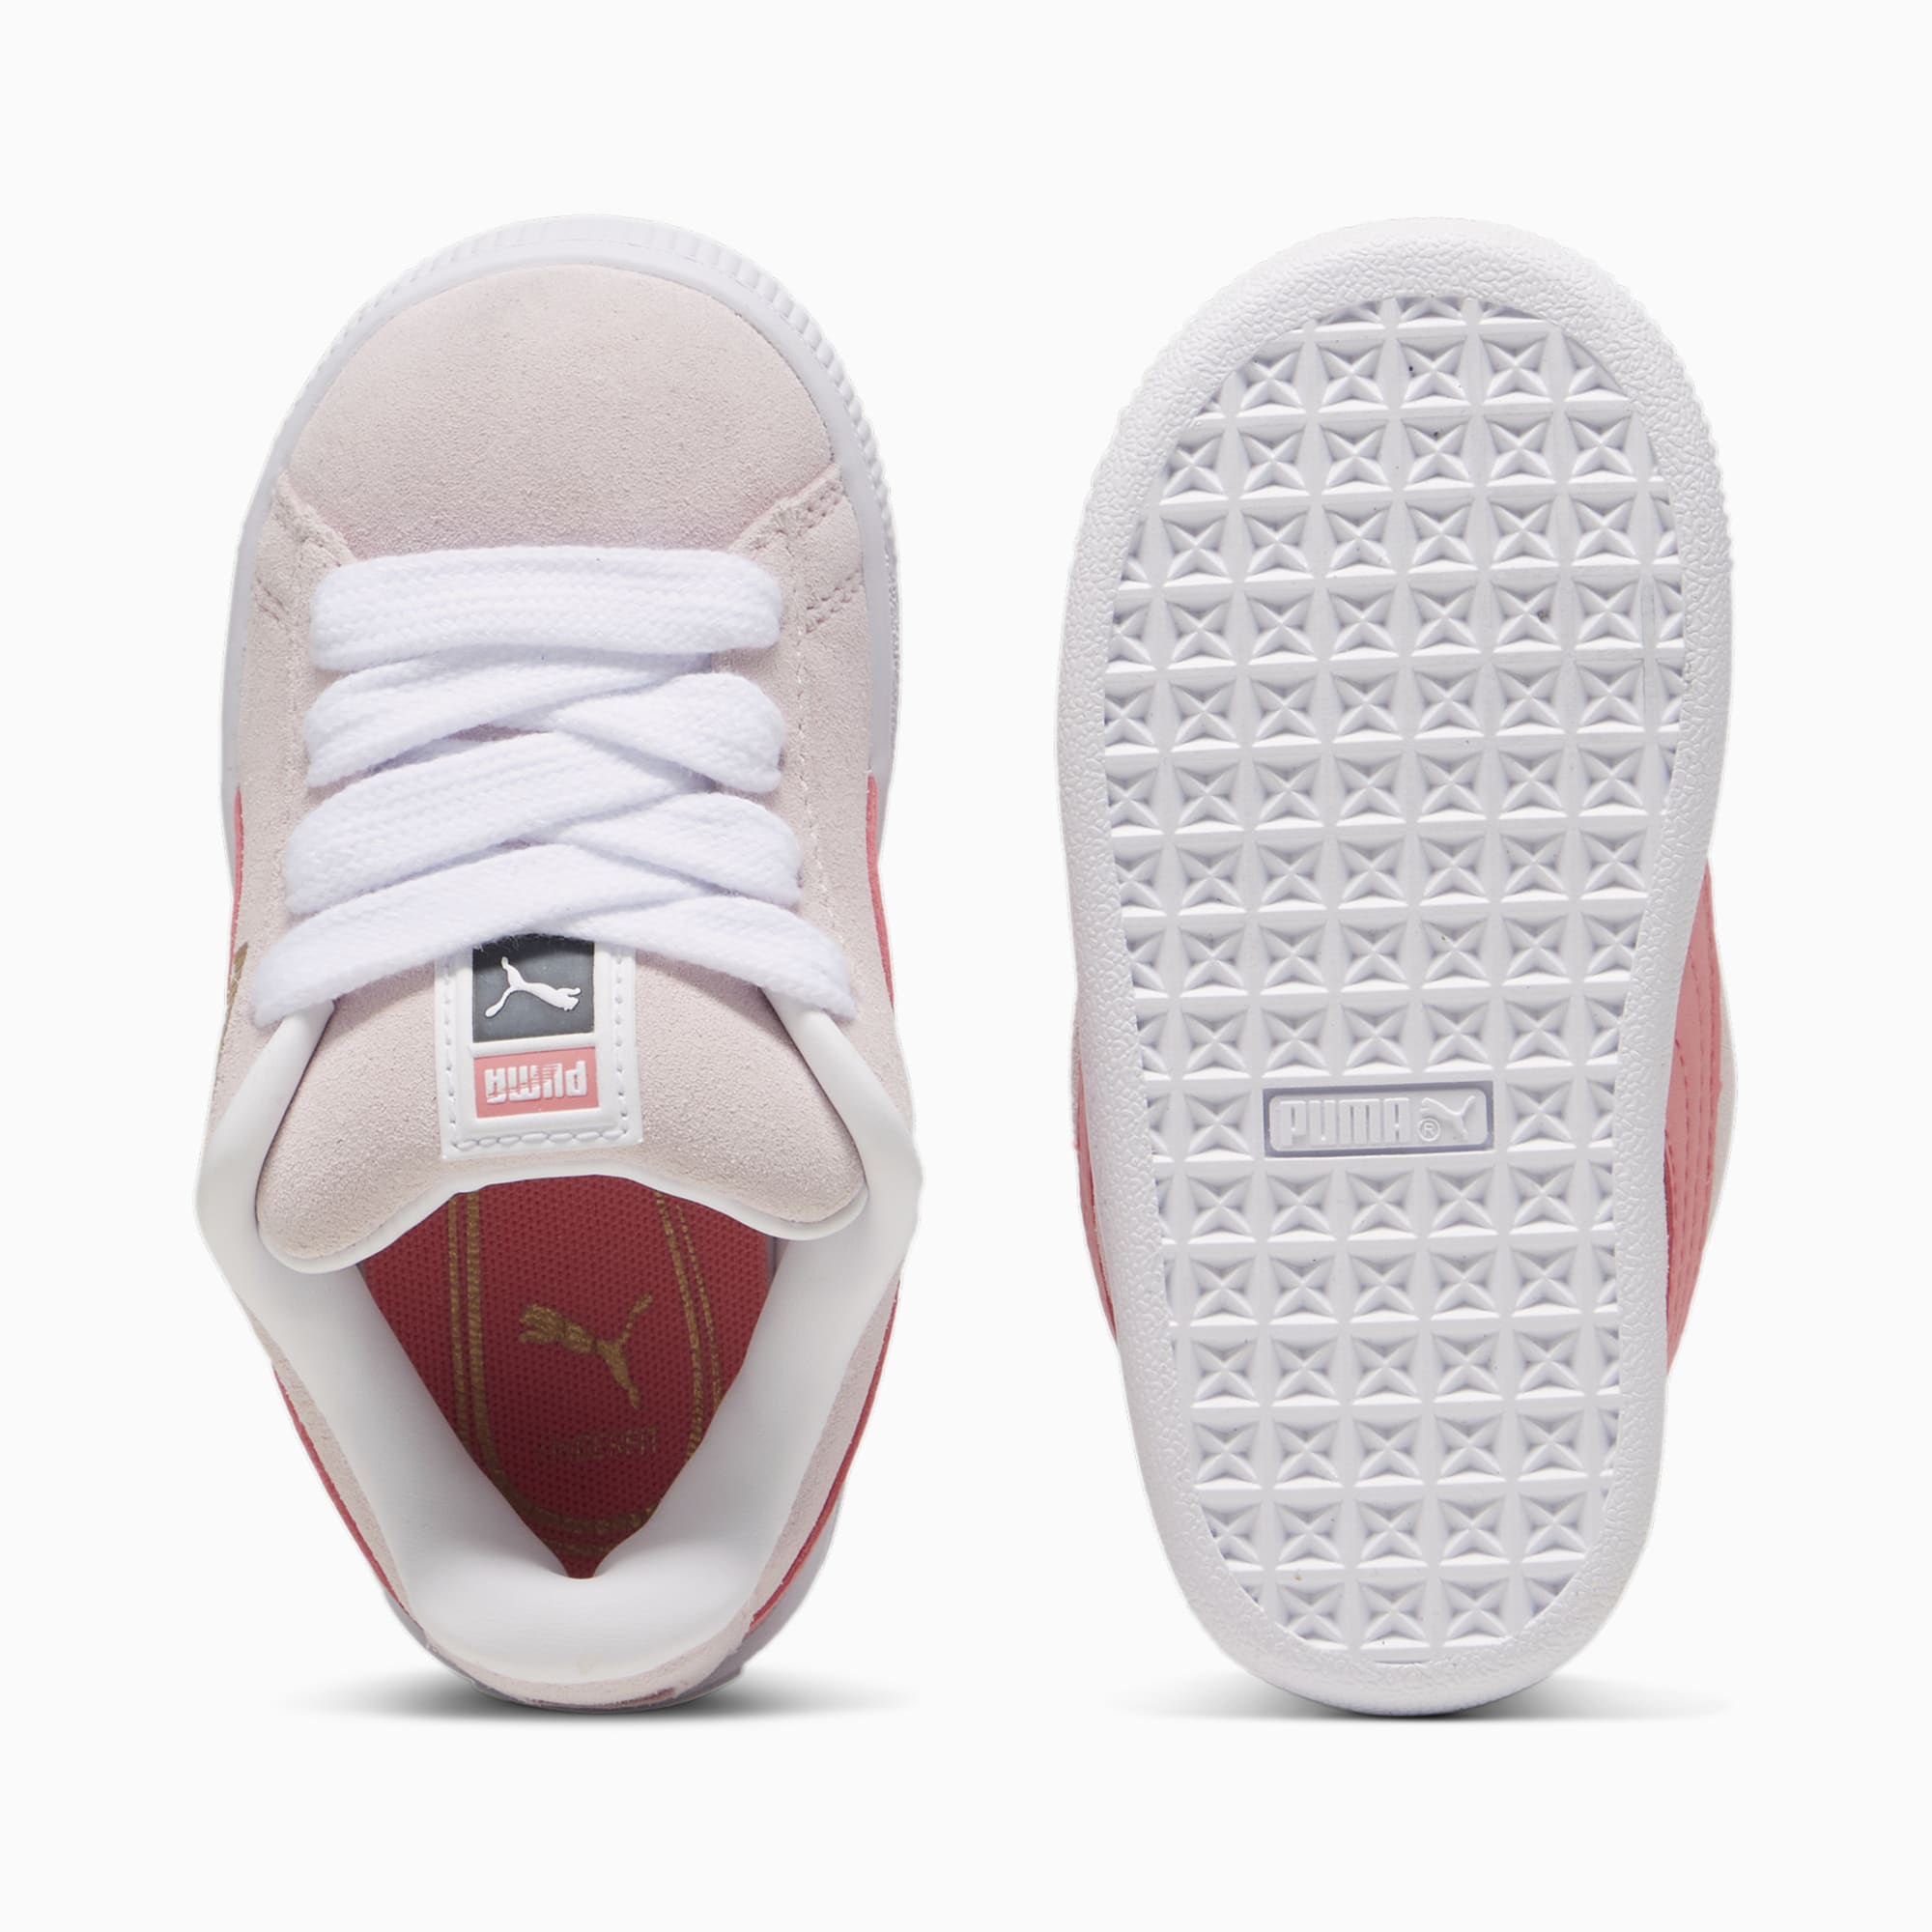 PUMA Suede XL Sneakers Babys Schuhe, Weiß, Größe: 21, Schuhe